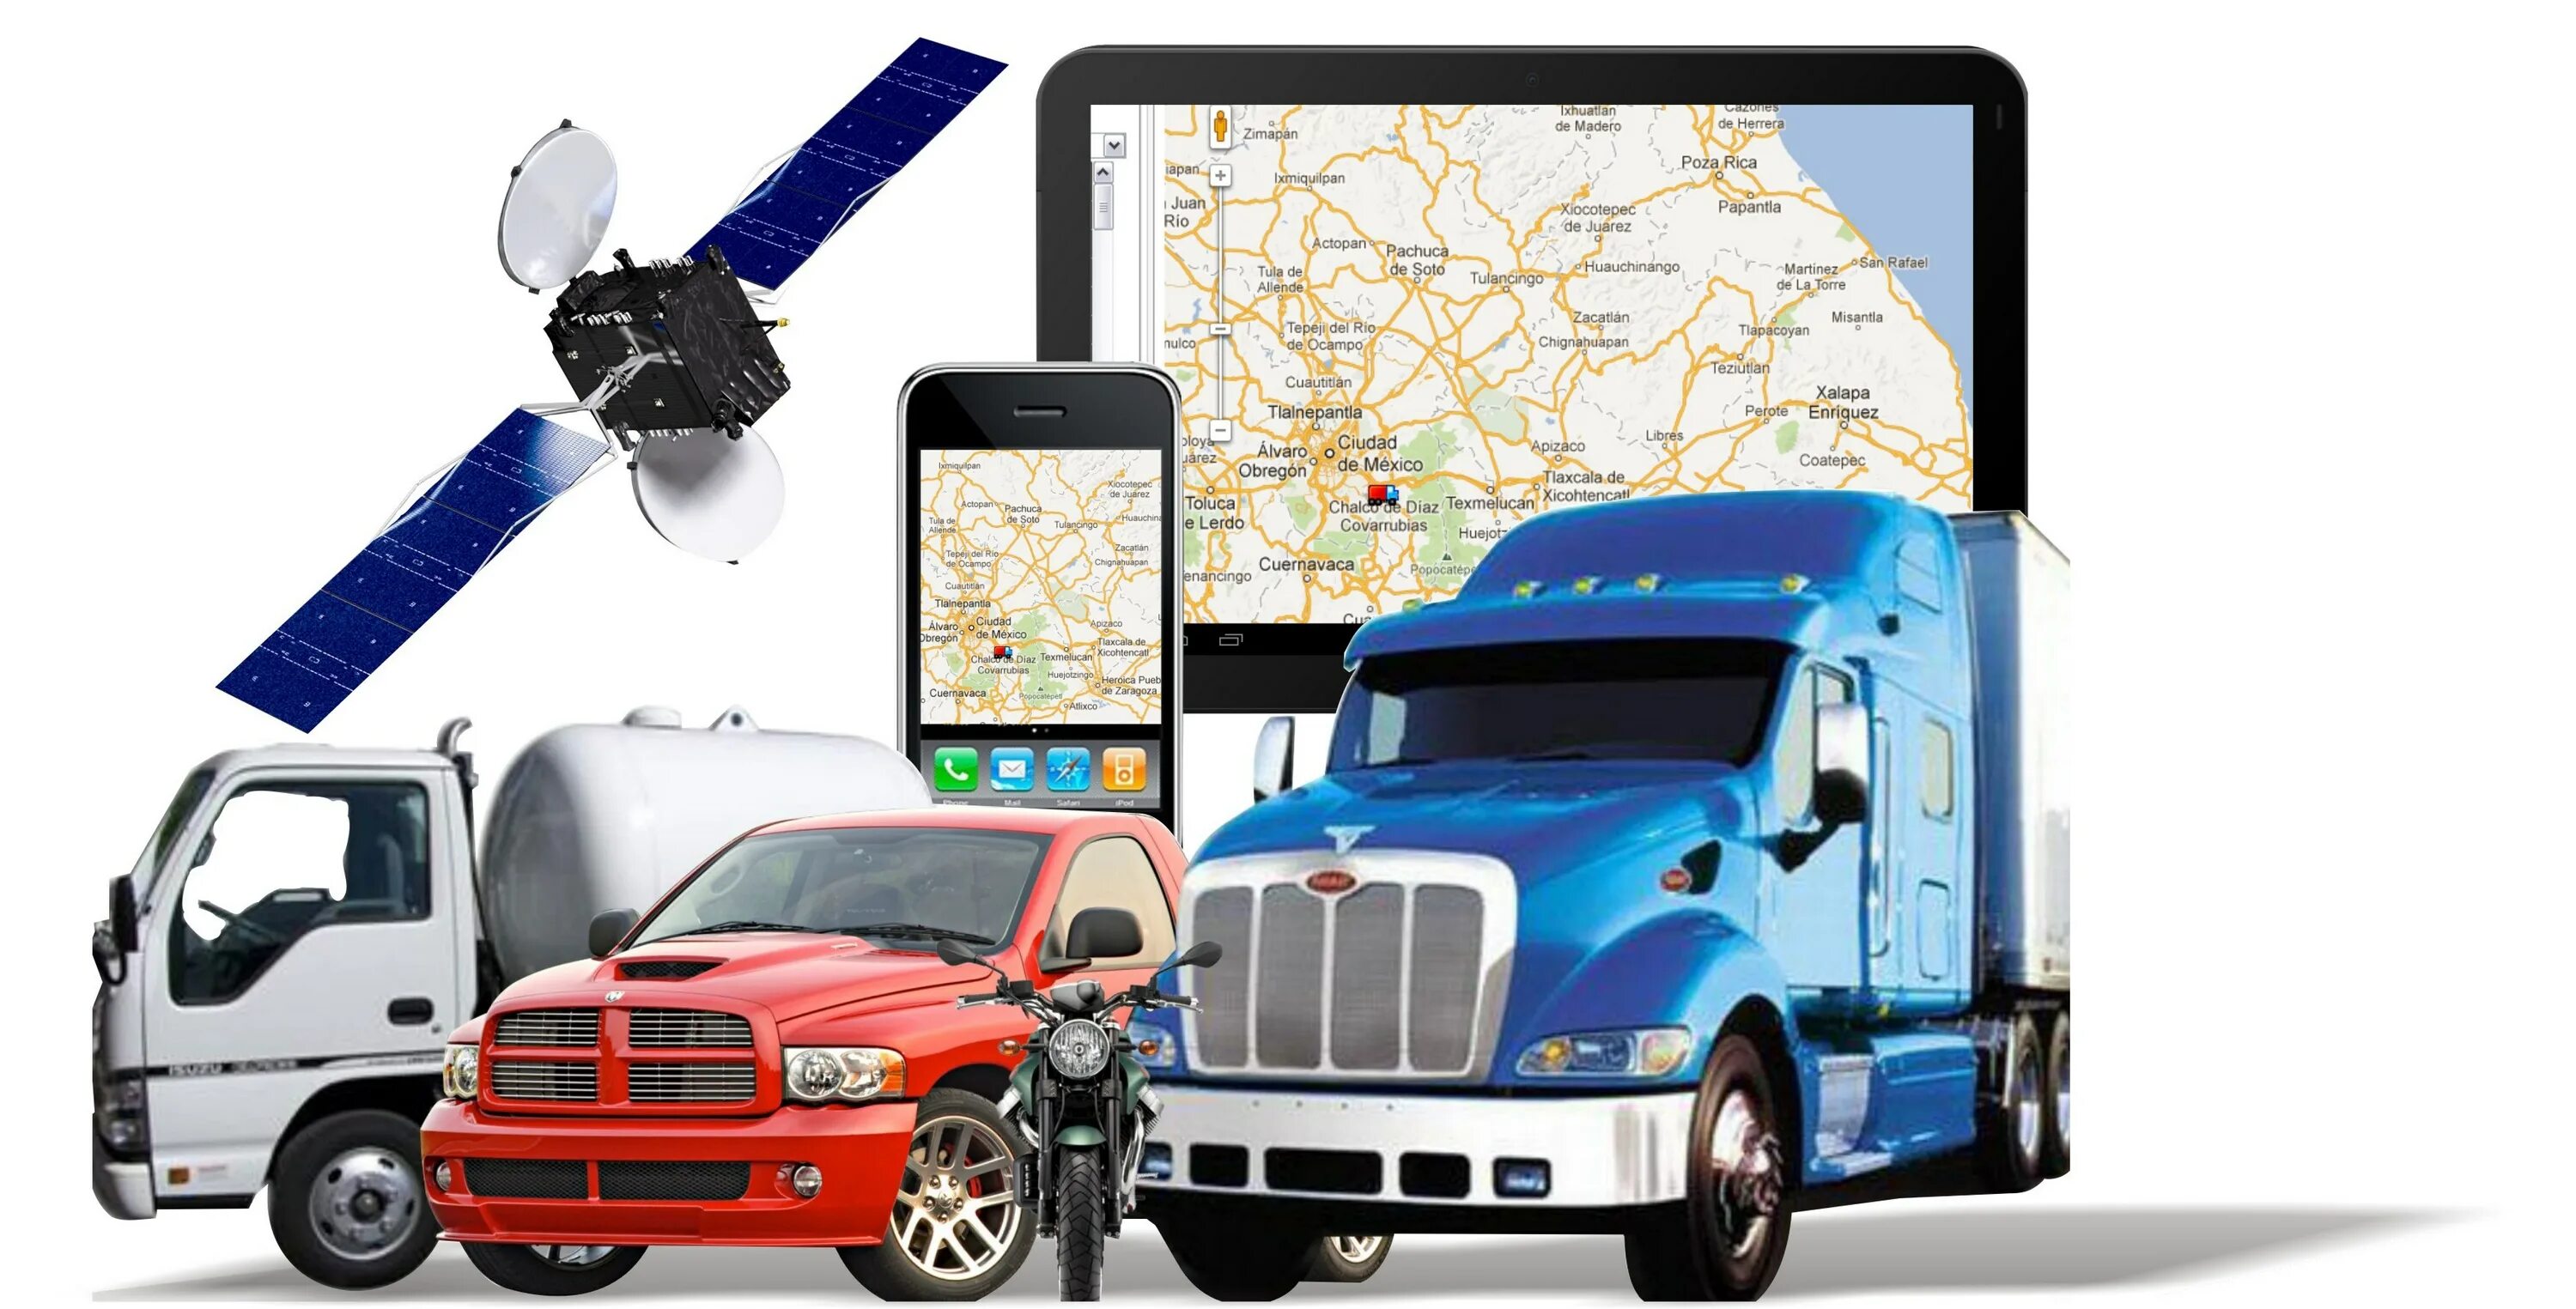 Спутниковый мониторинг транспорта ГЛОНАСС GPS. Подсистема GPS/ ГЛОНАСС мониторинга. Система GPS контроля транспорта. Навигационная система GPS ГЛОНАСС Валиот. Система контроля топлива и мониторинга транспорта